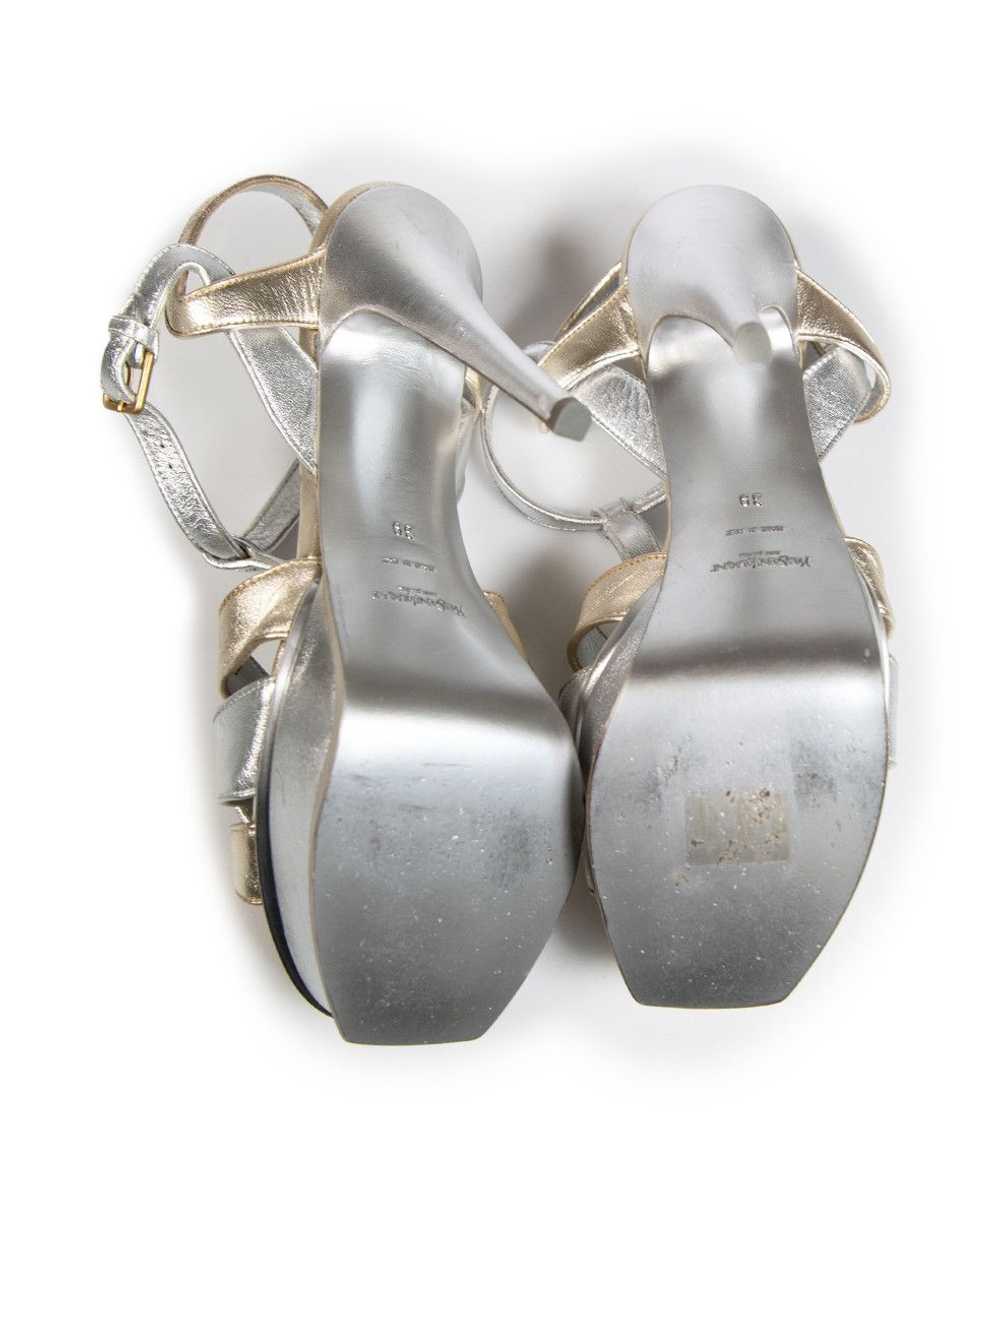 Saint Laurent Paris Silver Leather Tribute Sandals - image 4